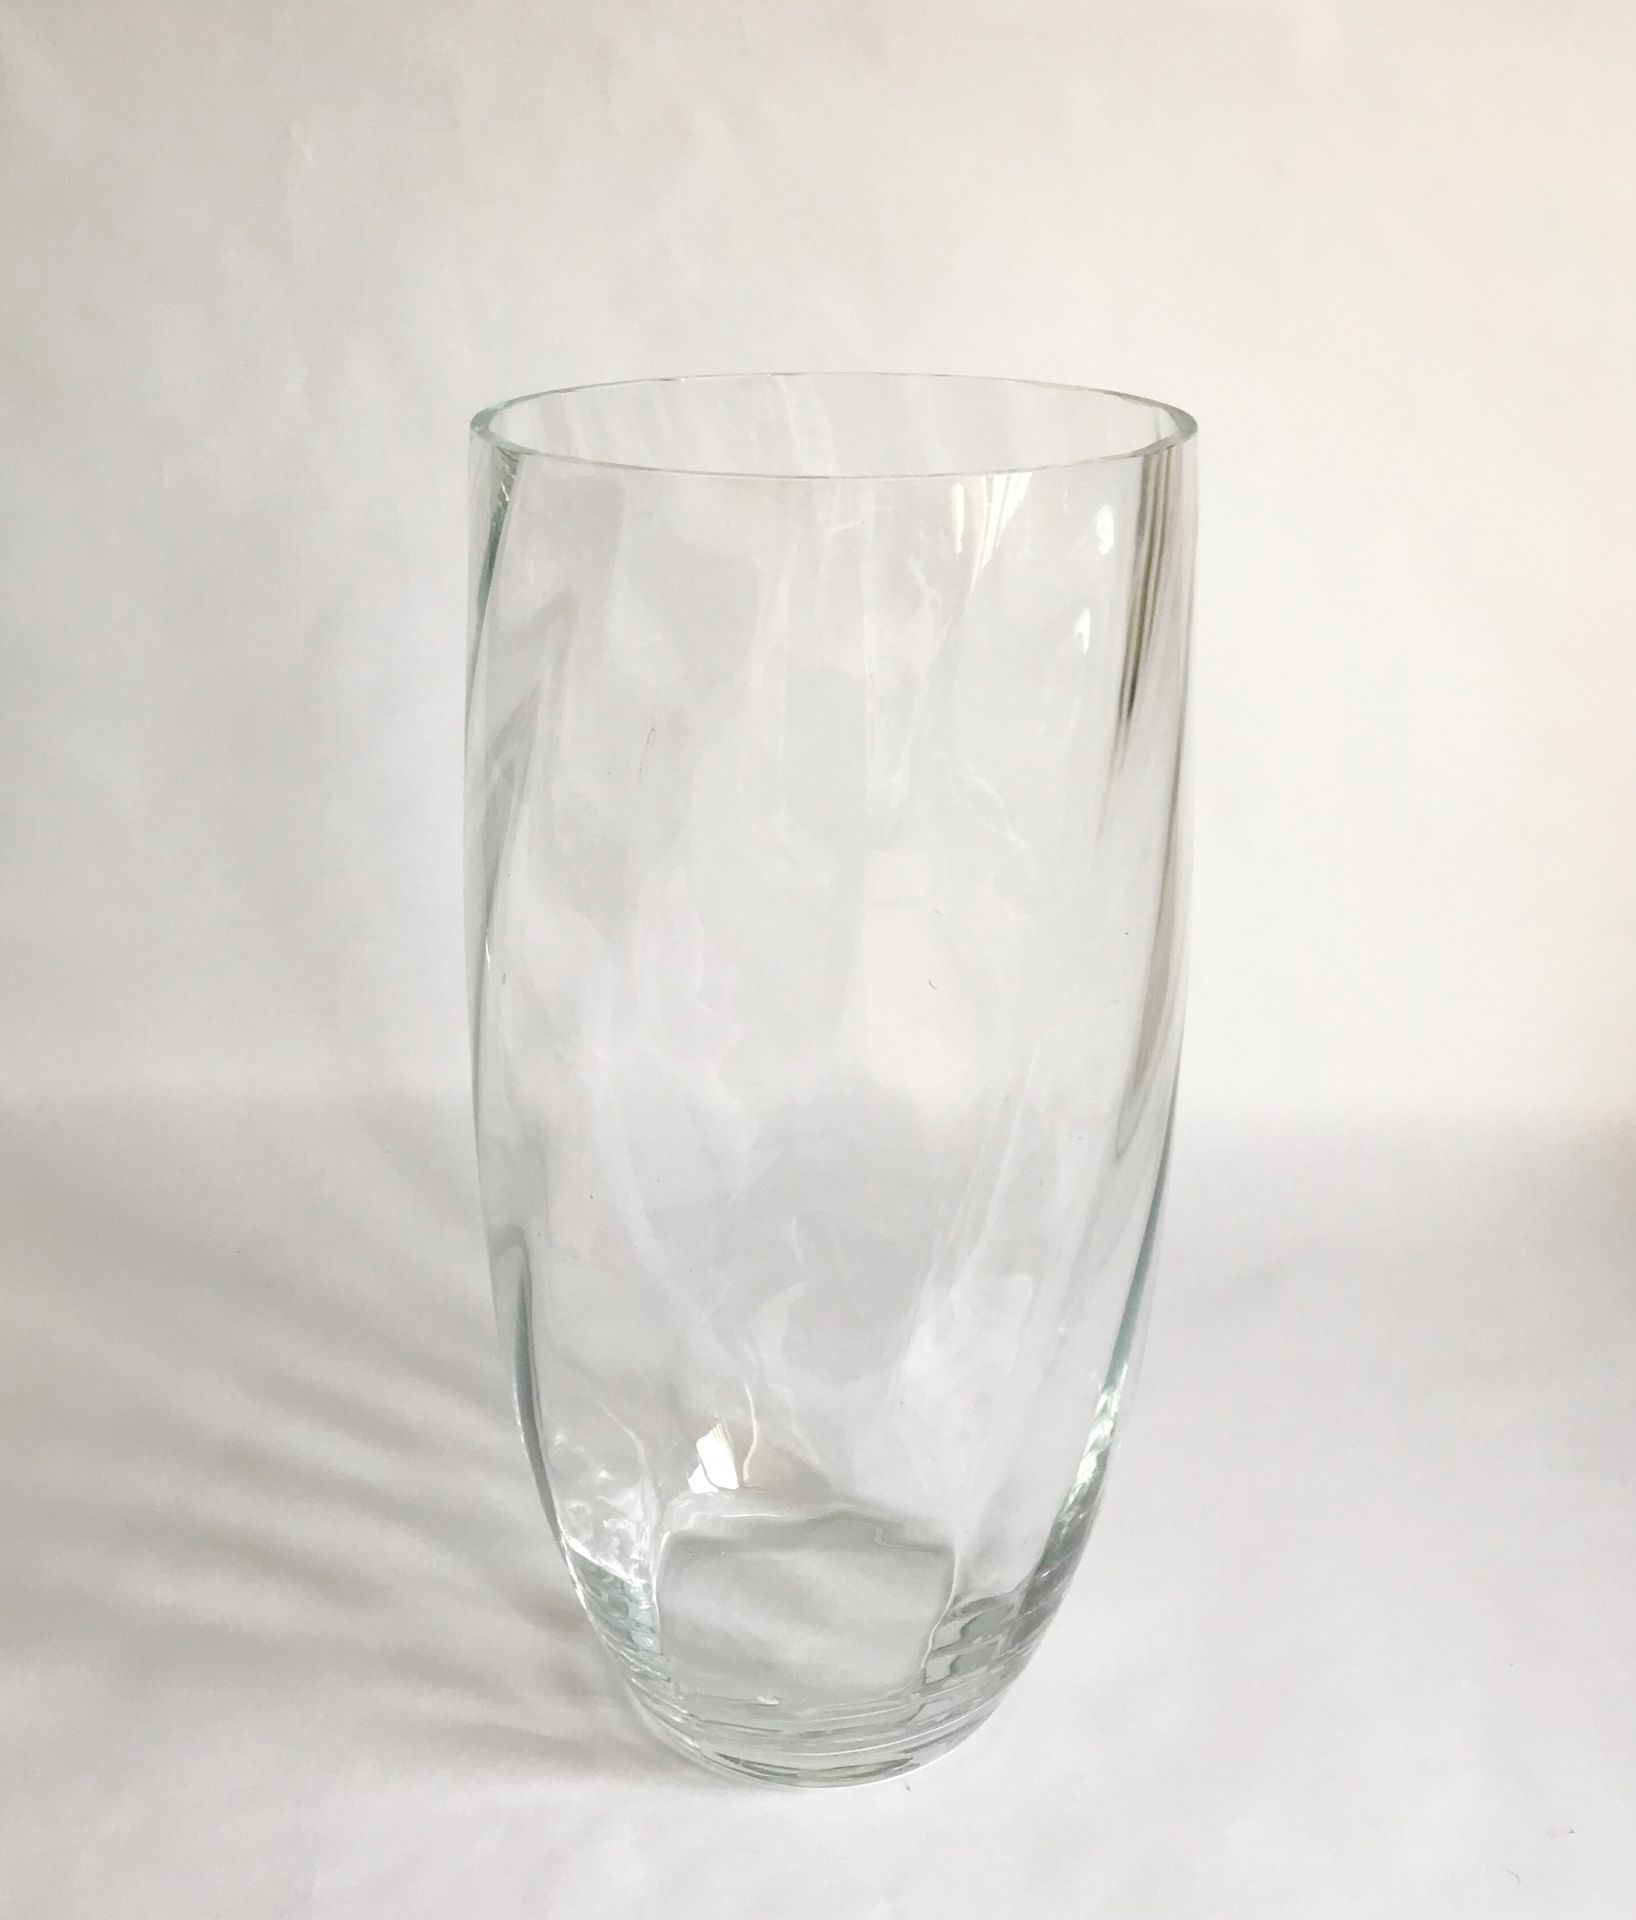 Null Un gran jarrón cilíndrico de vidrio soplado retorcido.

H. 40 cm